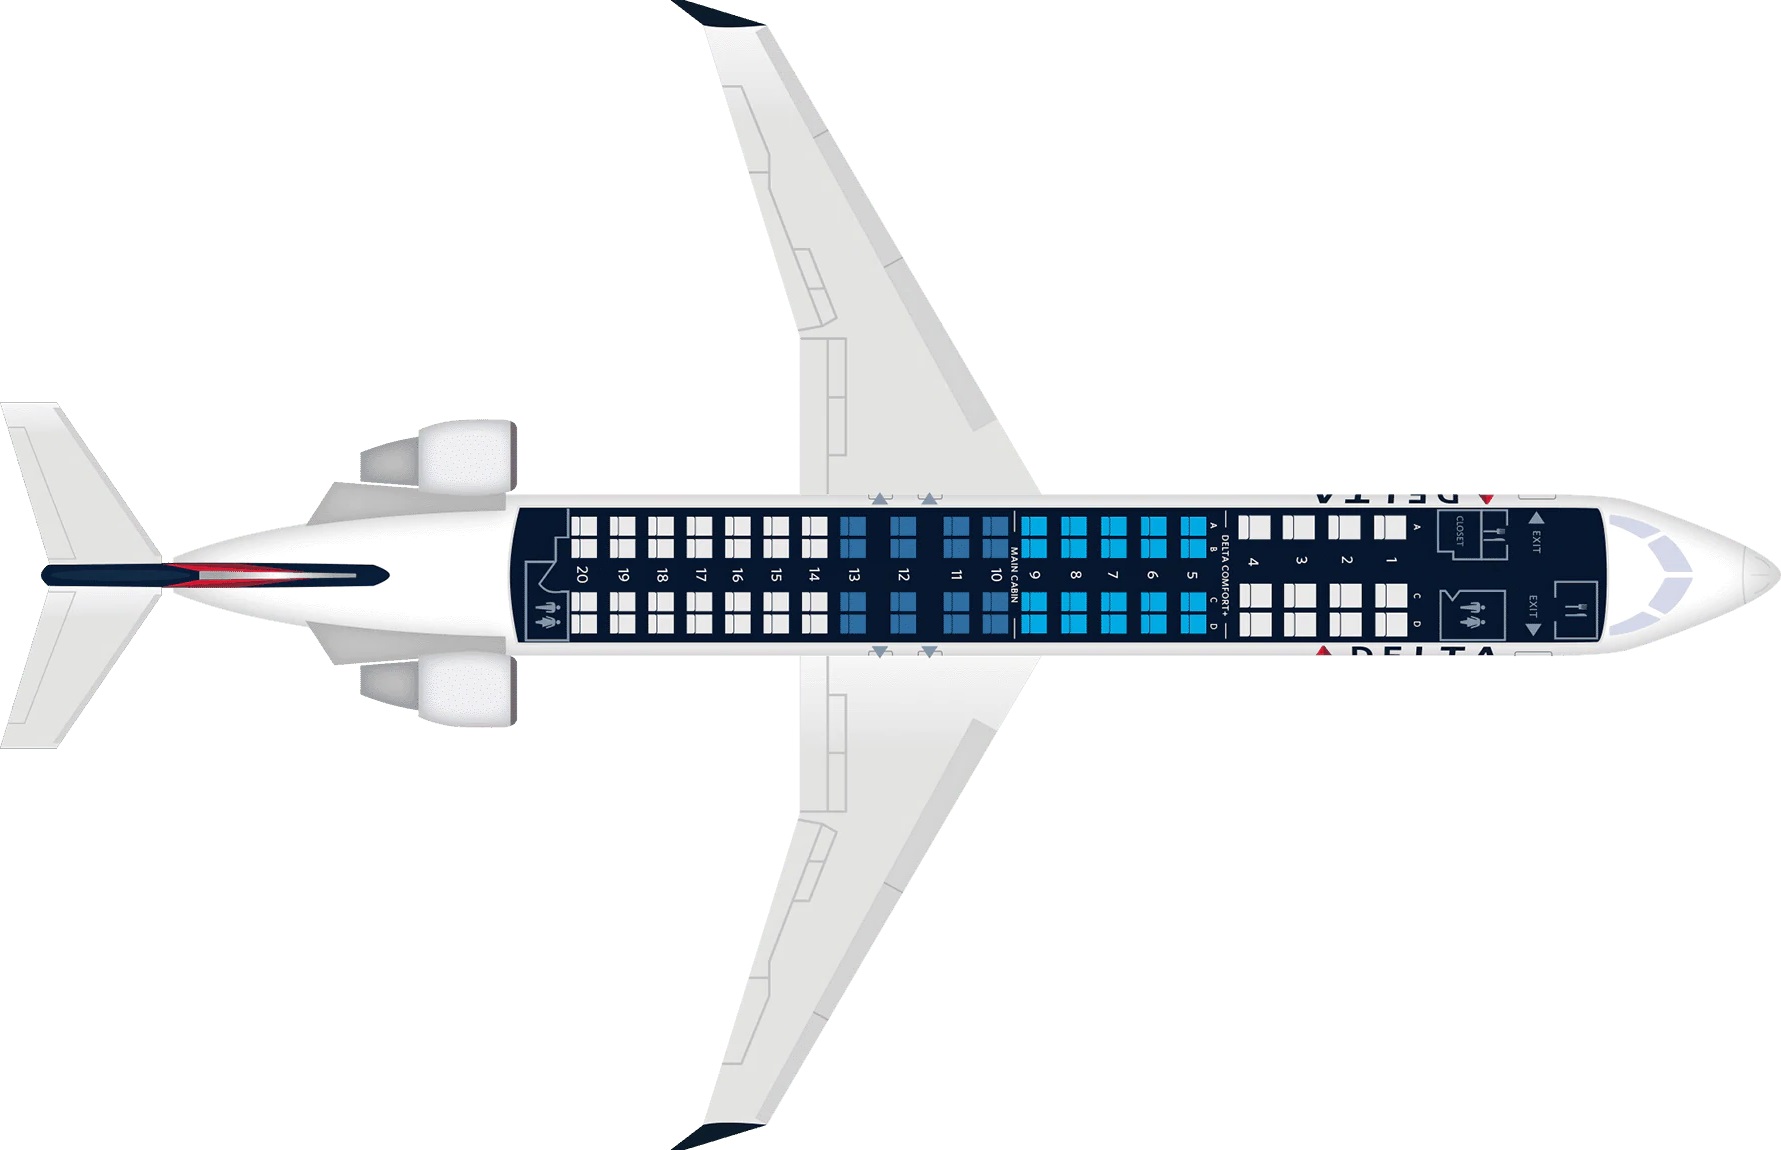 CRJ900 Seat Map